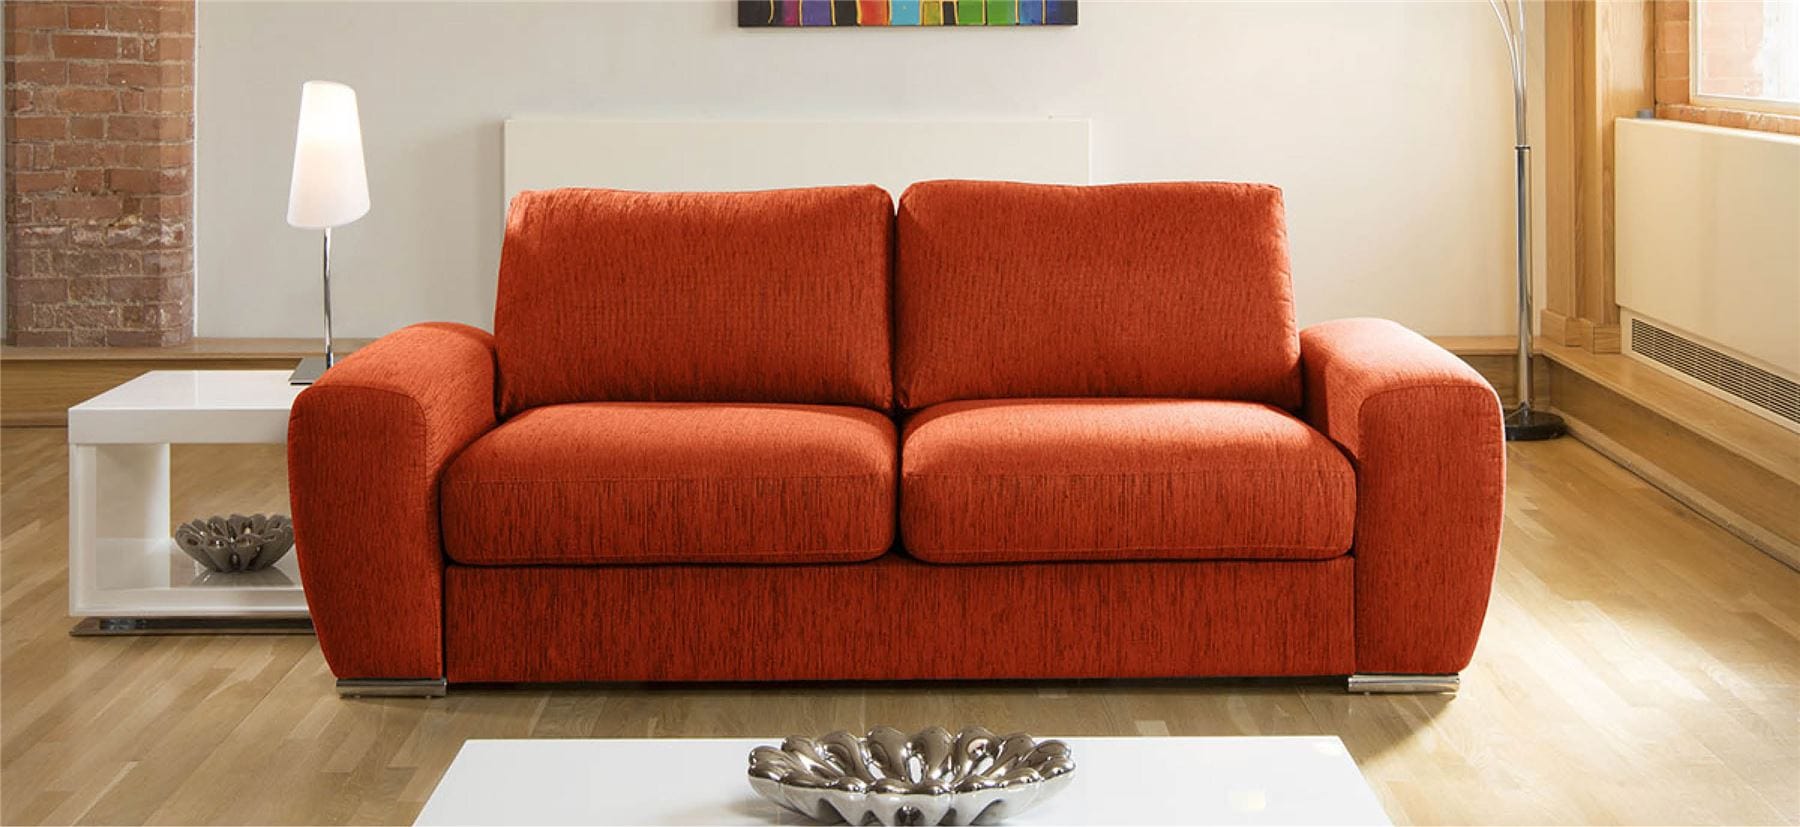 Quatropi Quatropi Luxury Large Modern 3 Seater Sofa Couch 2.4m Grande 3S H Rest